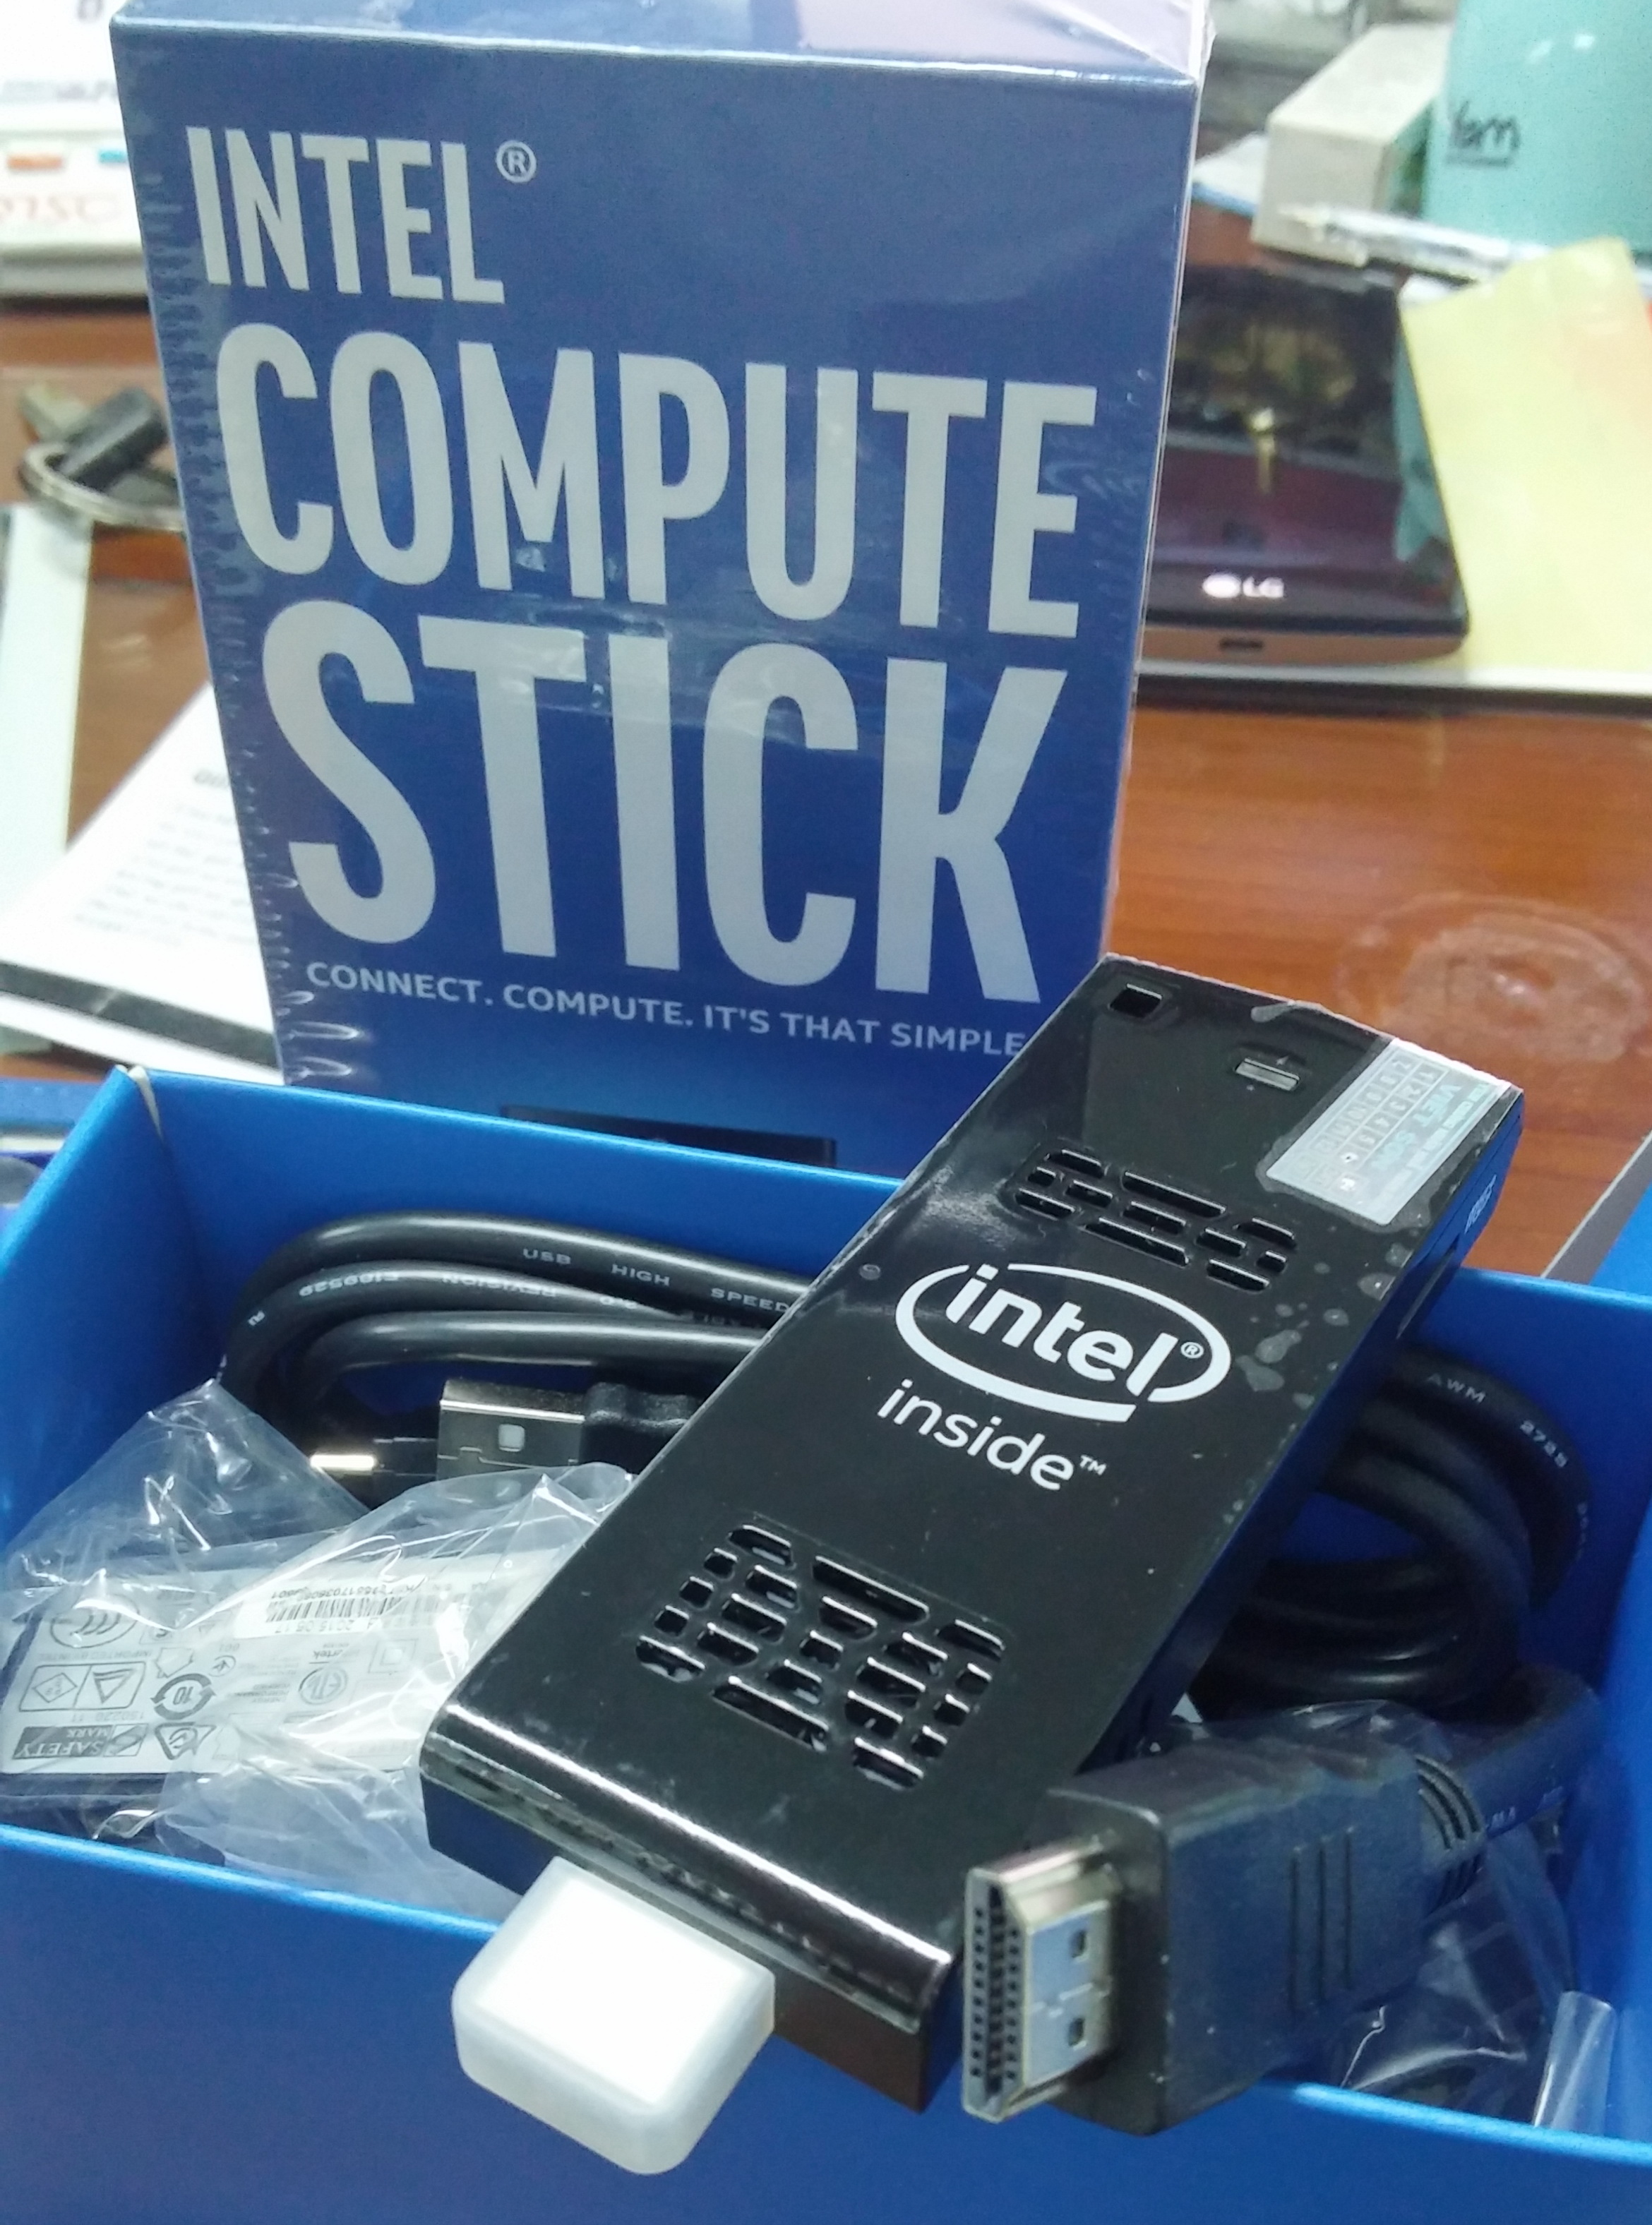 Mở hộp Intel Compute Stick, nhỏ gọn trong lòng bàn tay - Ảnh: Phong Vân